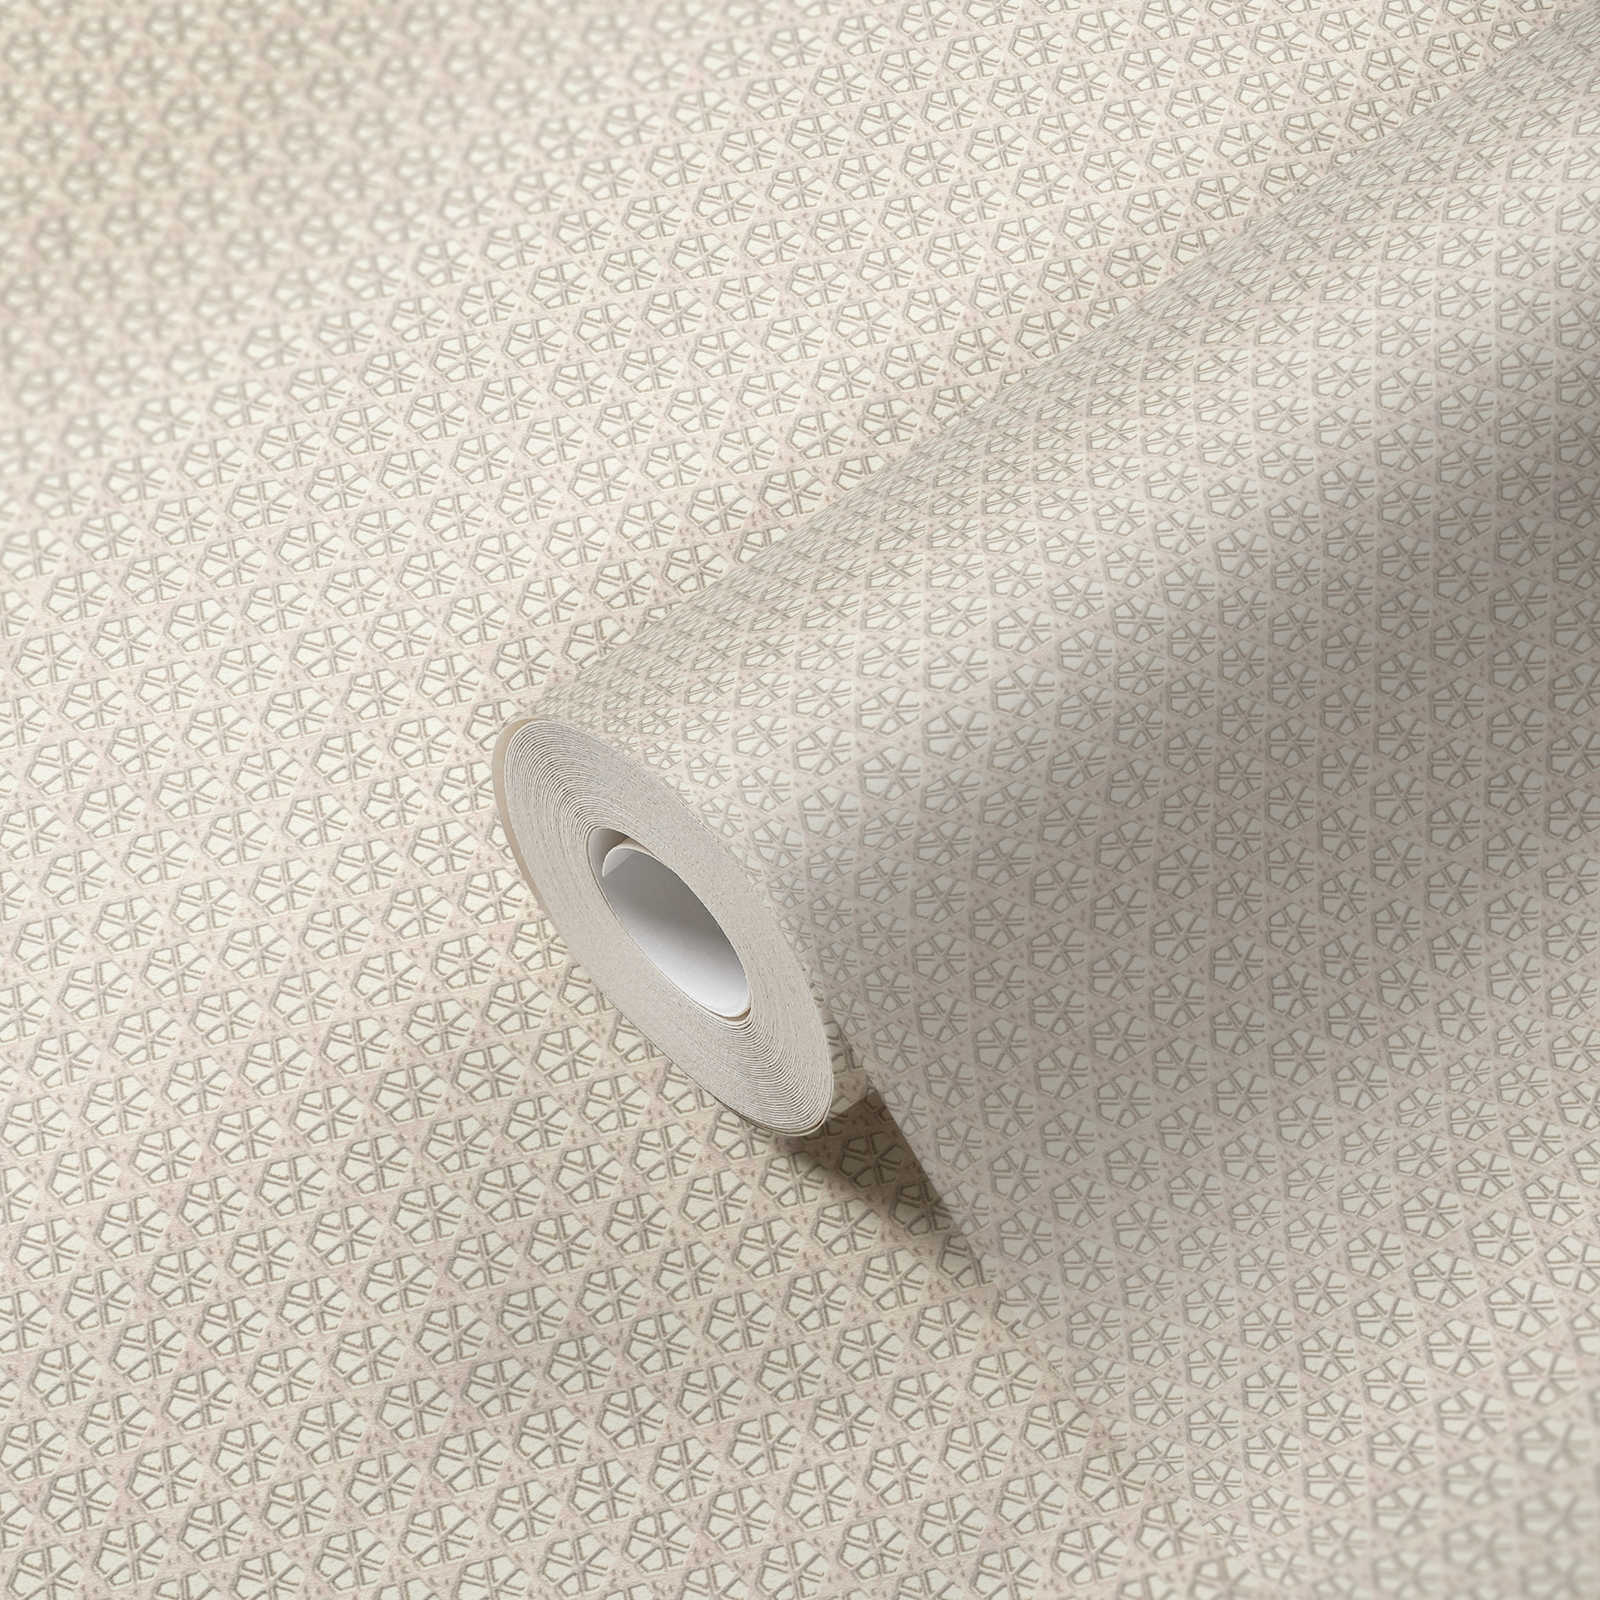             Tapete Rattan Muster im Japandi Stil – Grau, Weiß
        